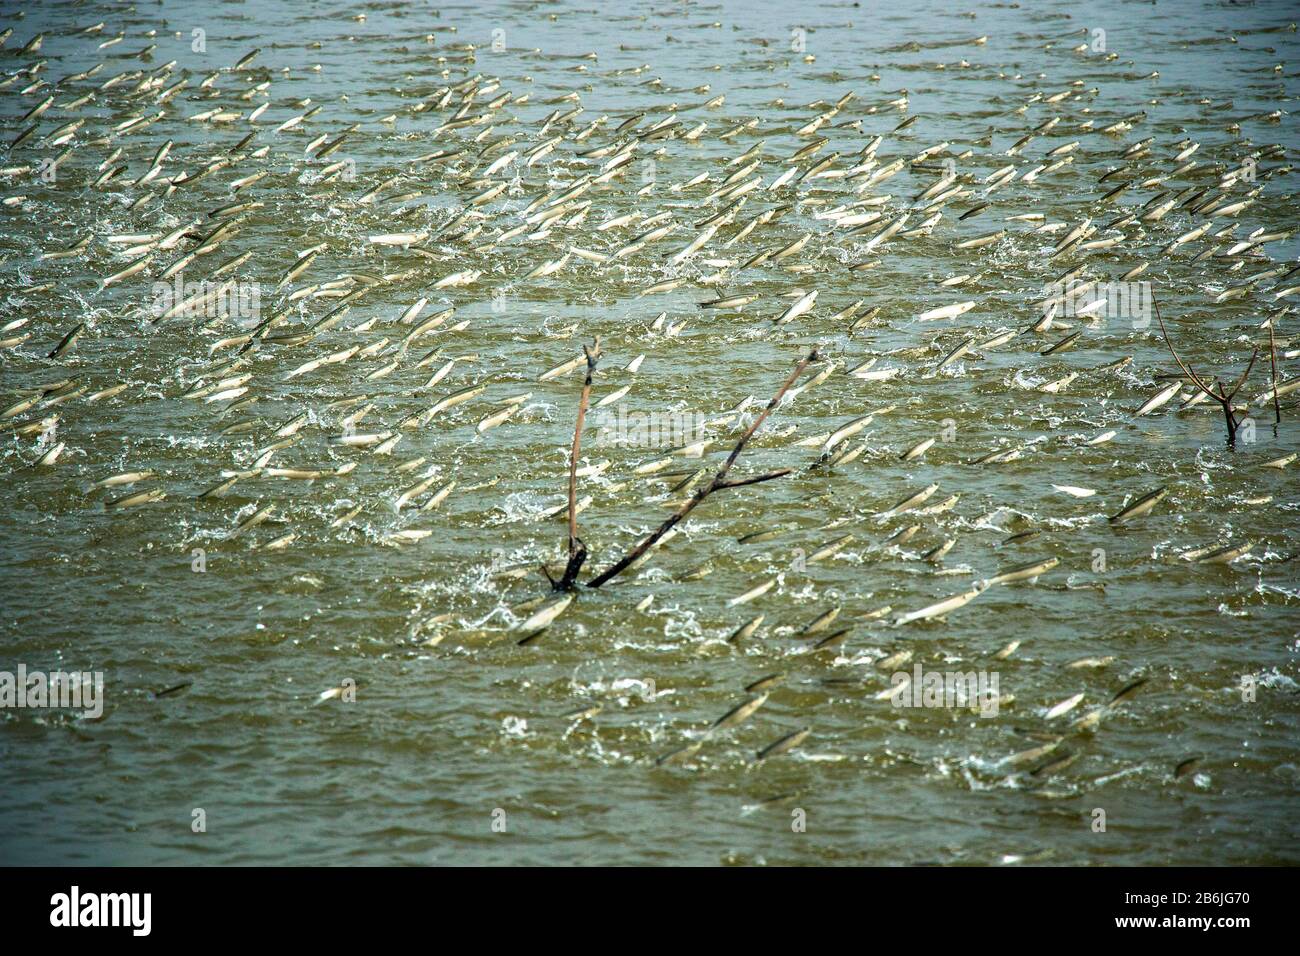 Eine Gruppe von Meeräschchen springt aus dem Wasser aus einem Teich. Die Fische spielen eine sehr wichtige Rolle, um den Teich zu belüften und das Wasser mit Sauerstoff anzureichern. Stockfoto